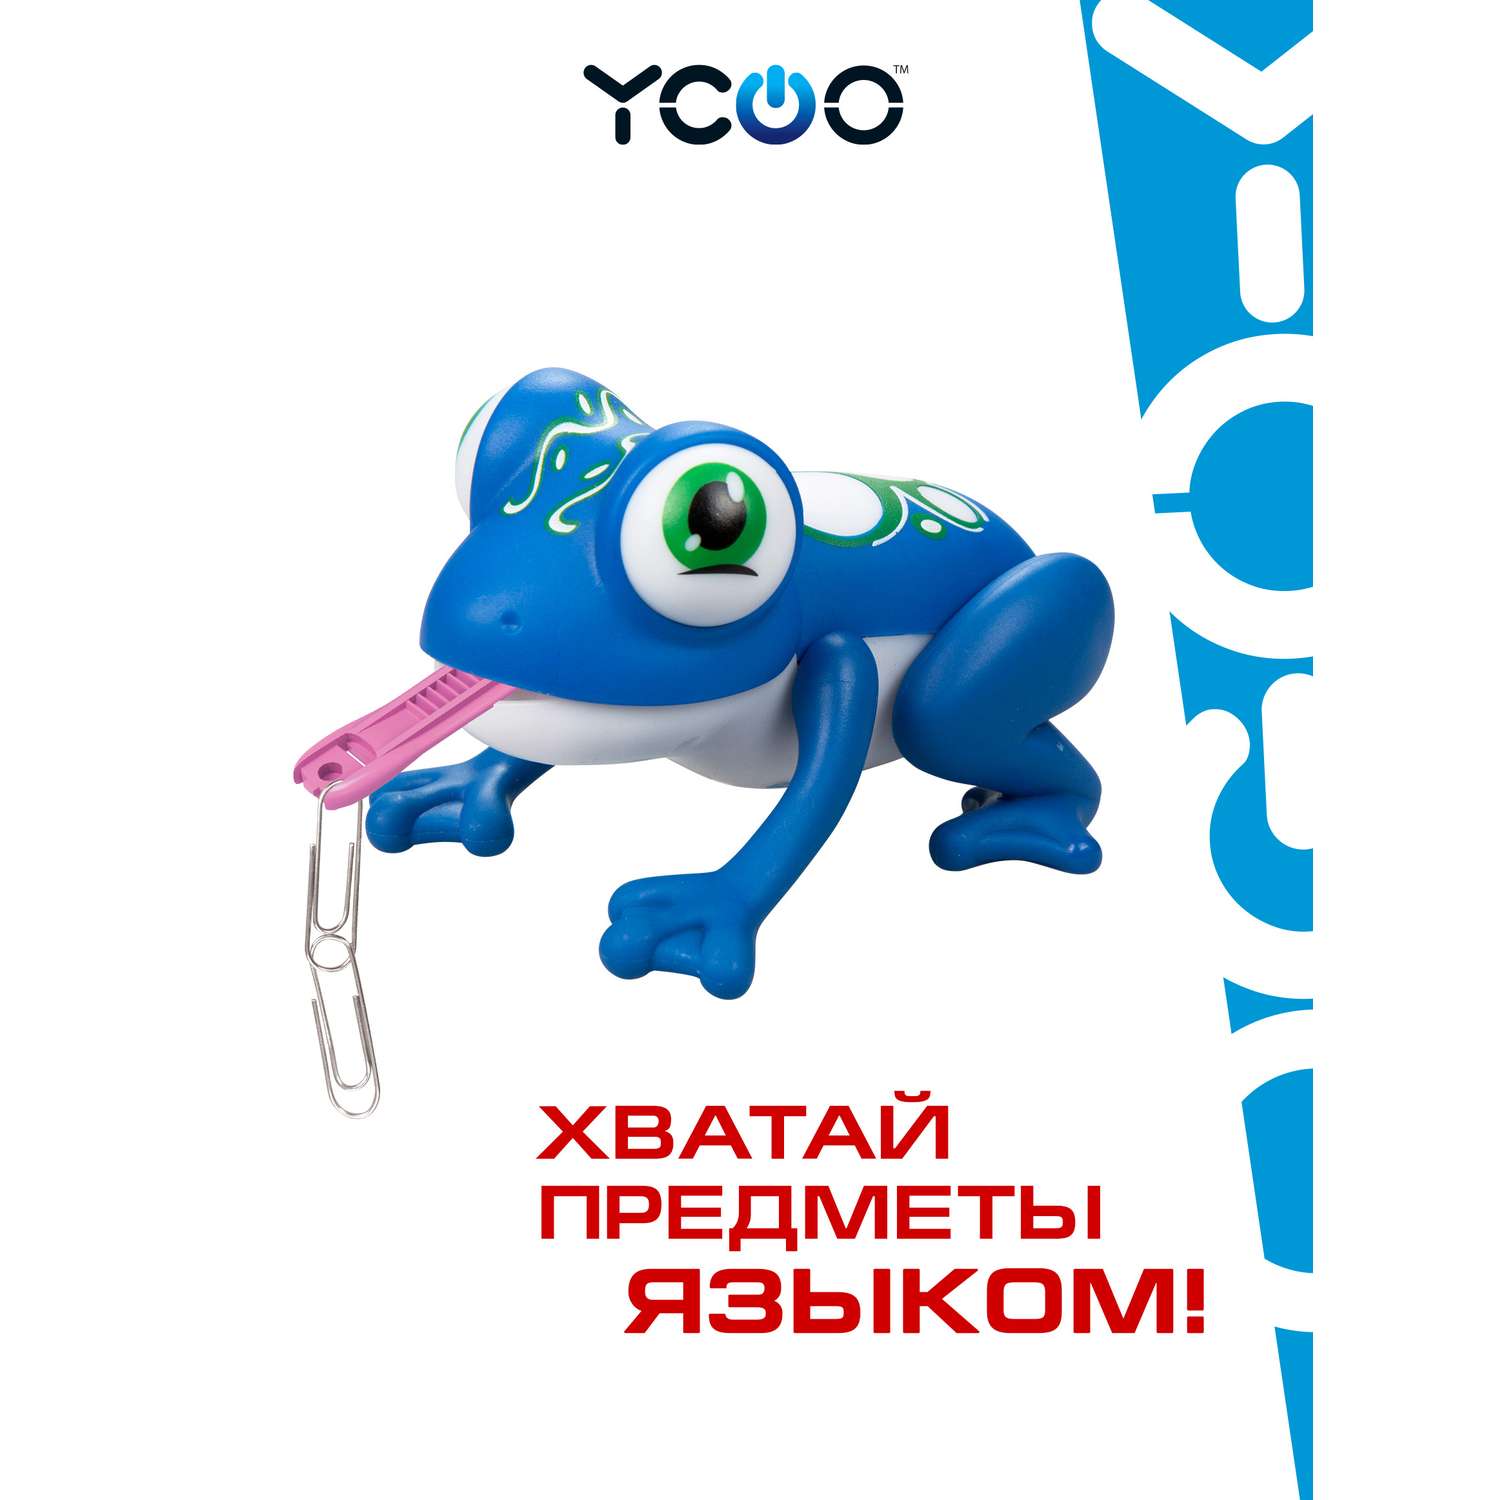 Игрушка YCOO Лягушка Глупи синяя - фото 1